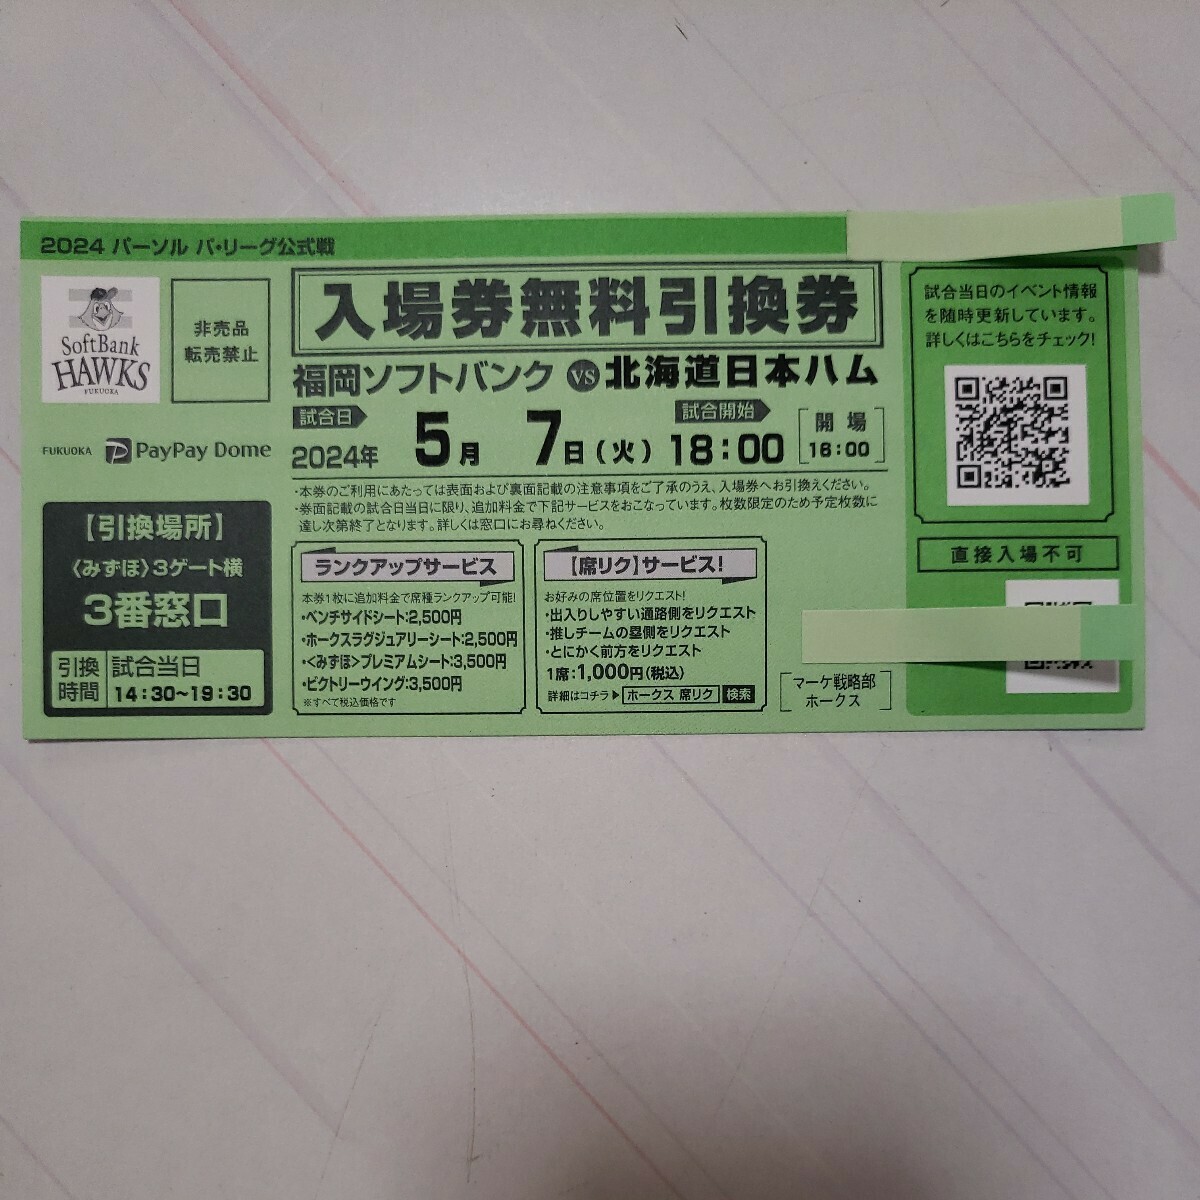 ５月7日(火) ペイペイドーム ソフトバンクvs日本ハム 入場券無料引換券 4枚_画像2